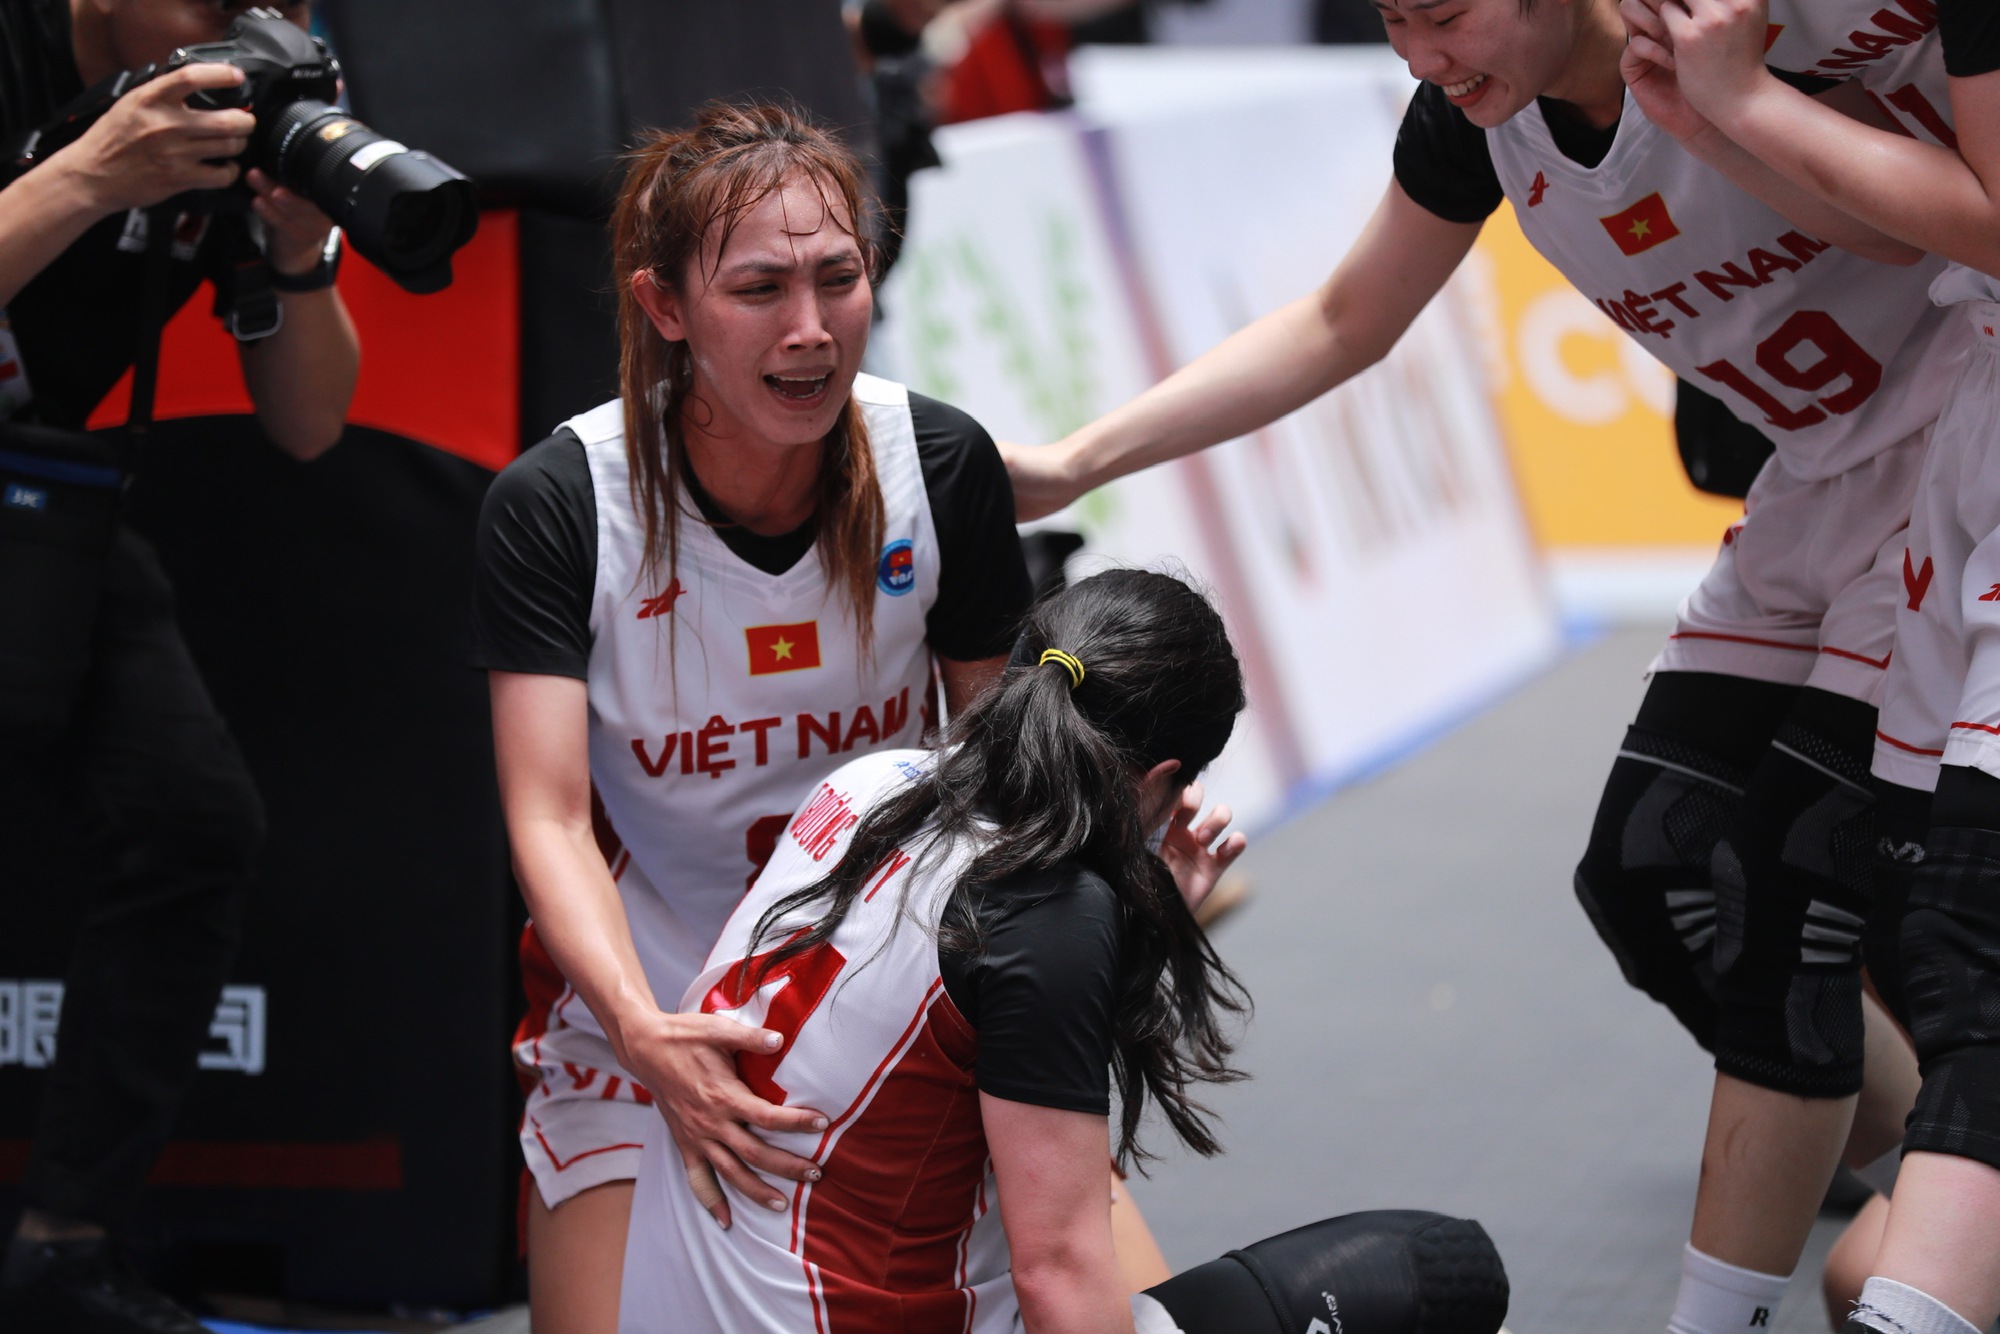 Trương Twins tỏa sáng giúp bóng rổ Việt Nam tạo địa chấn - Ảnh 3.